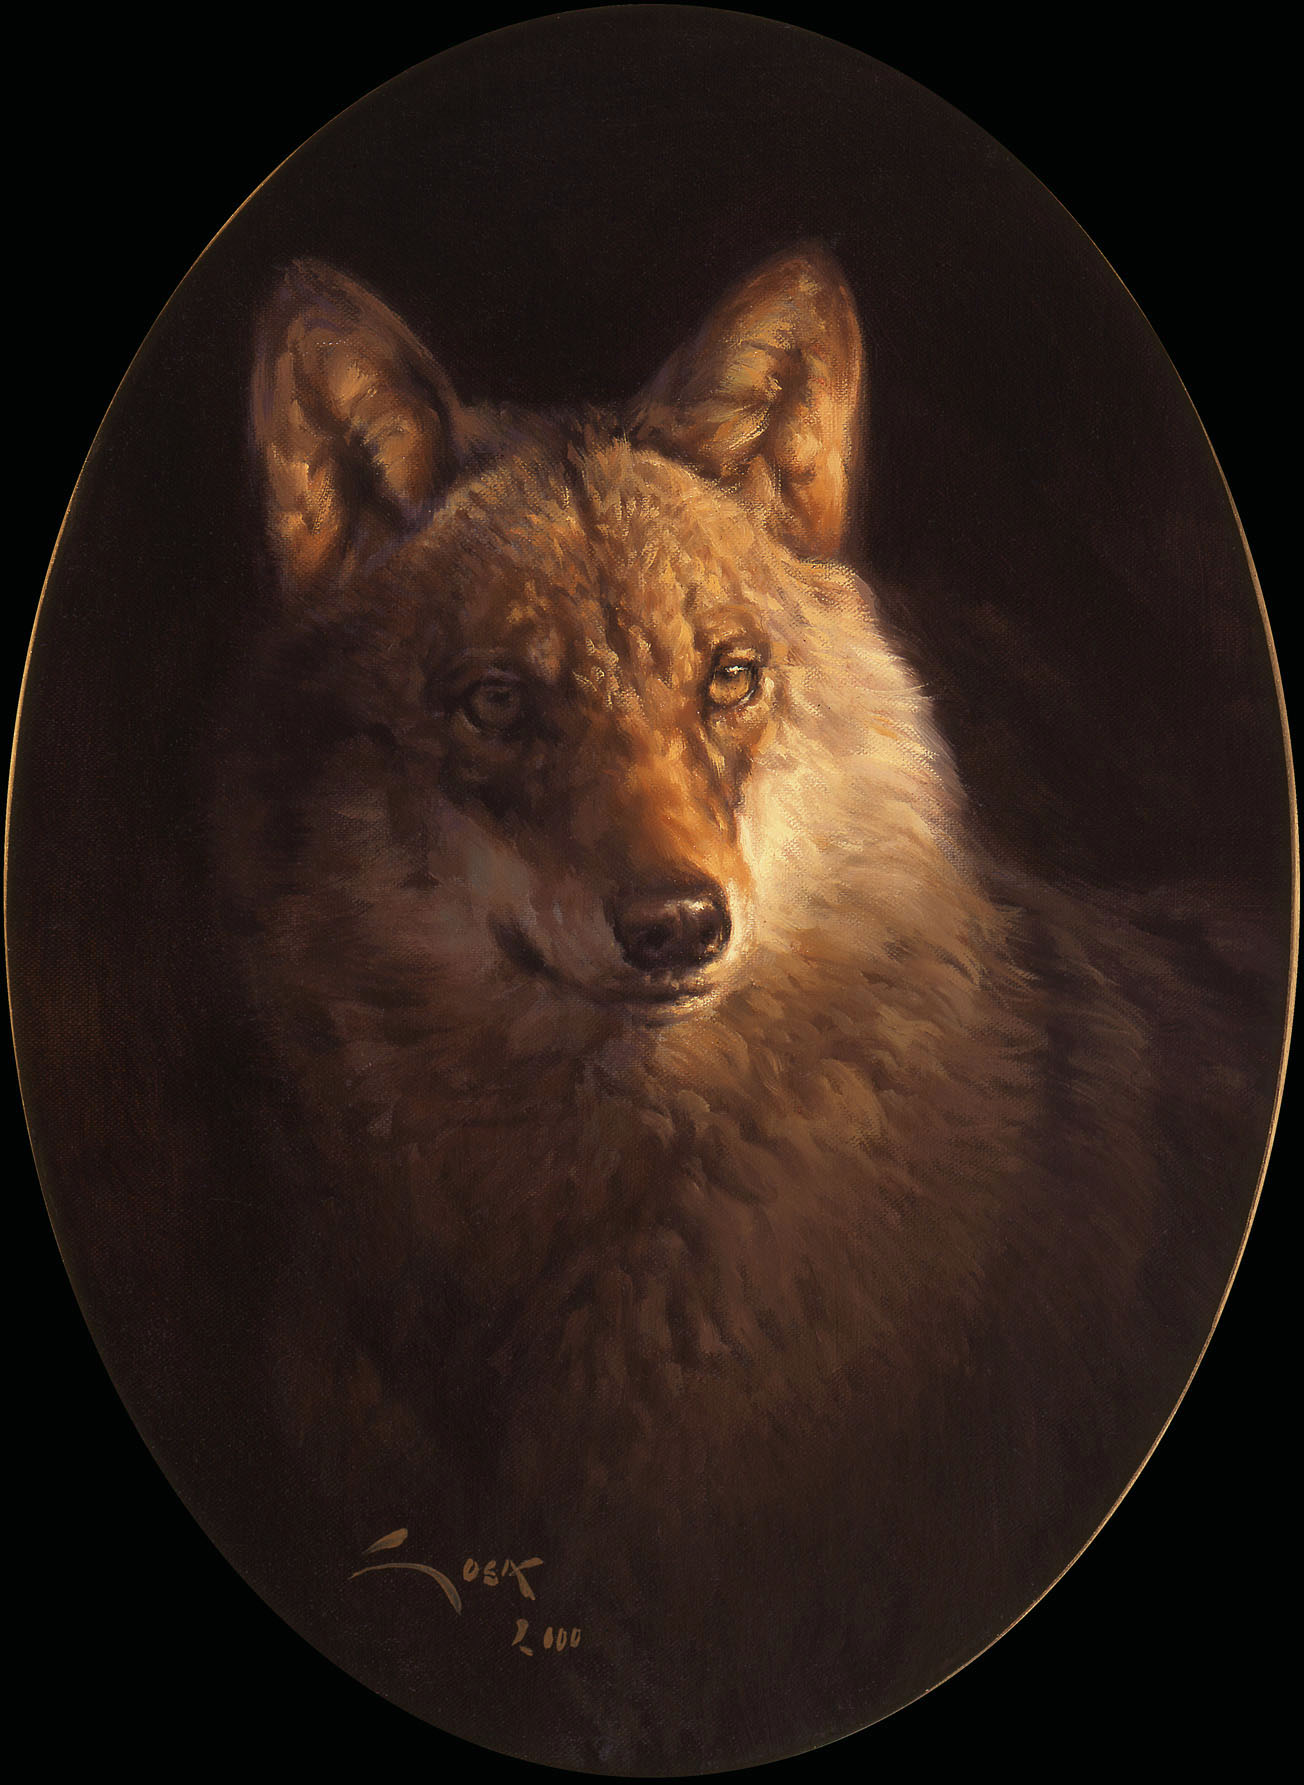 La Manada Cuadros de lobos Cuadro de lobo ibérico Lámina sobre lienzo 40 x 28 cms Canis lupus signatus animales 